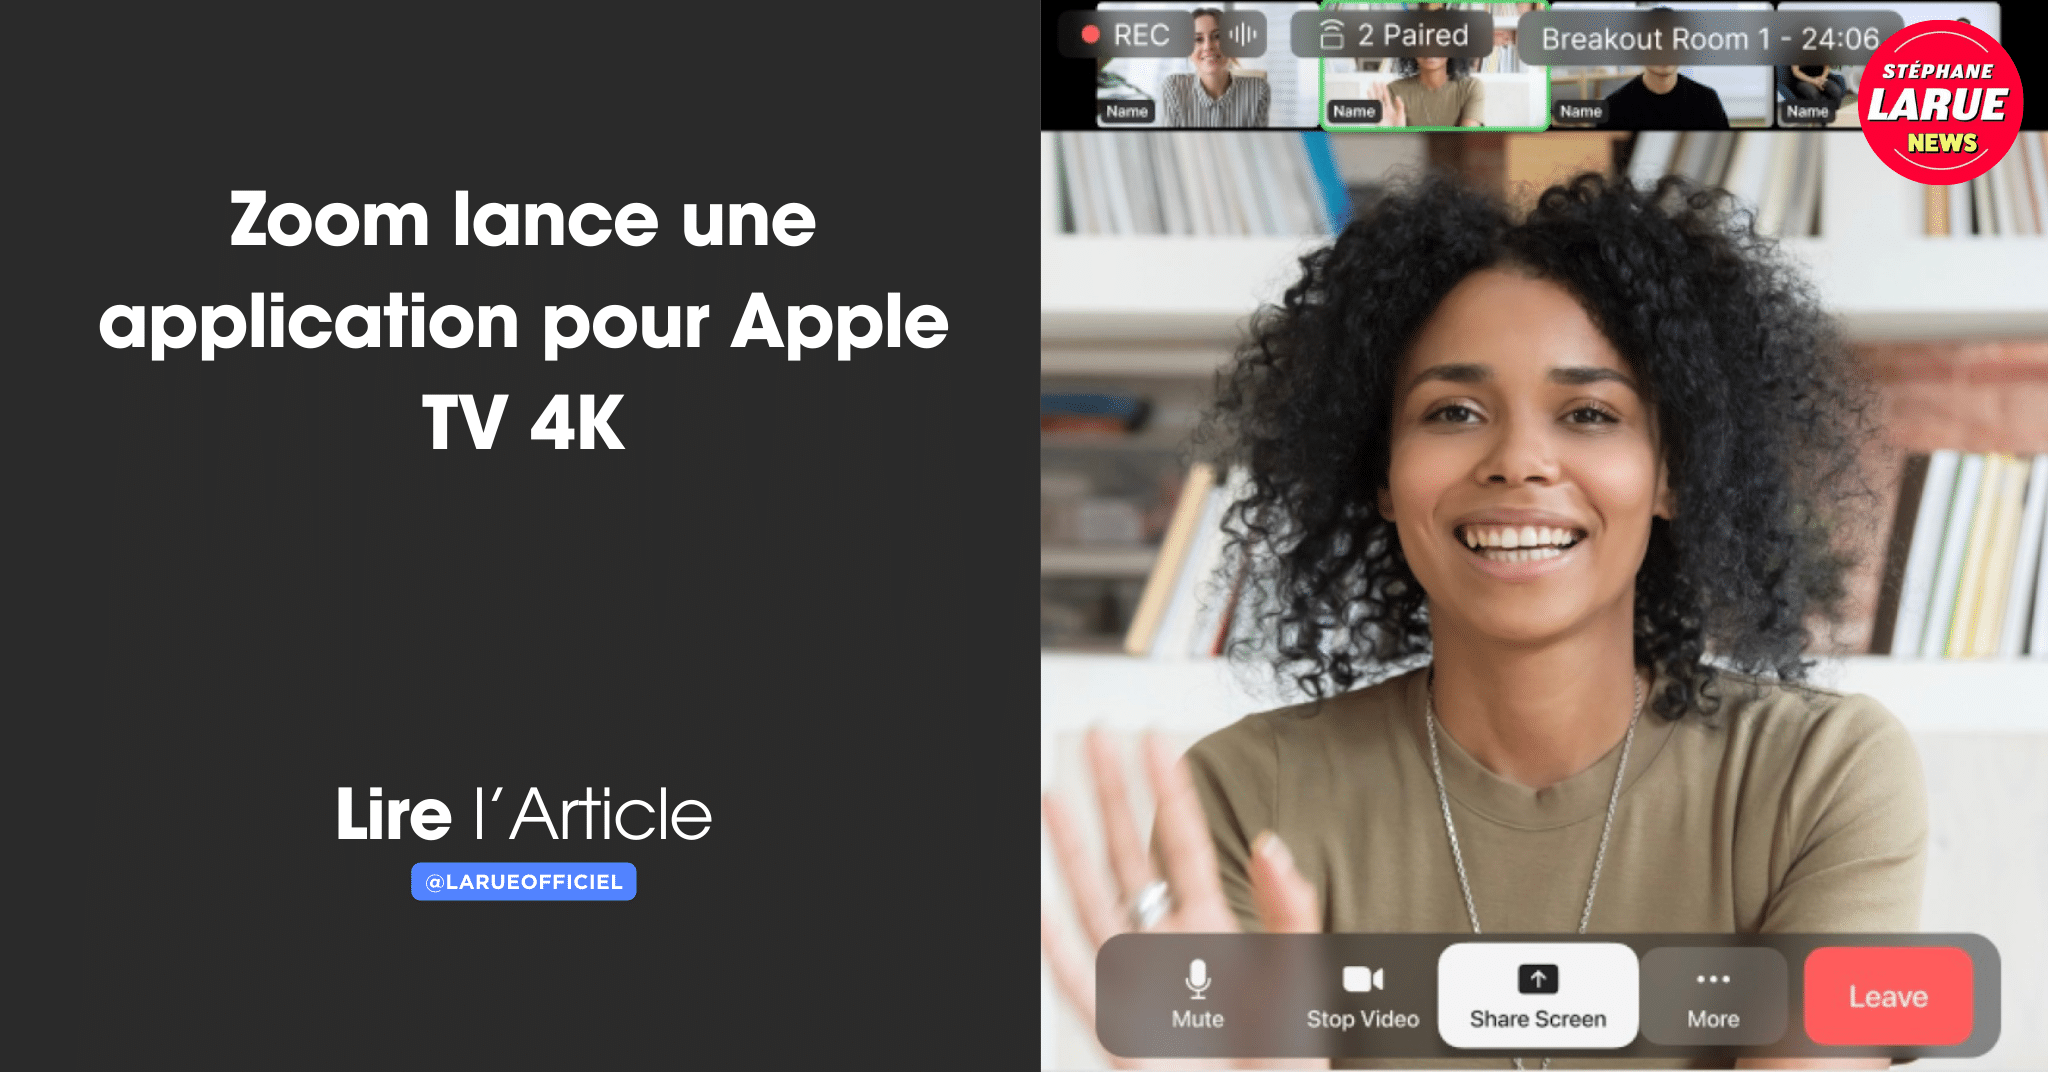 Zoom lance une application pour Apple TV 4K